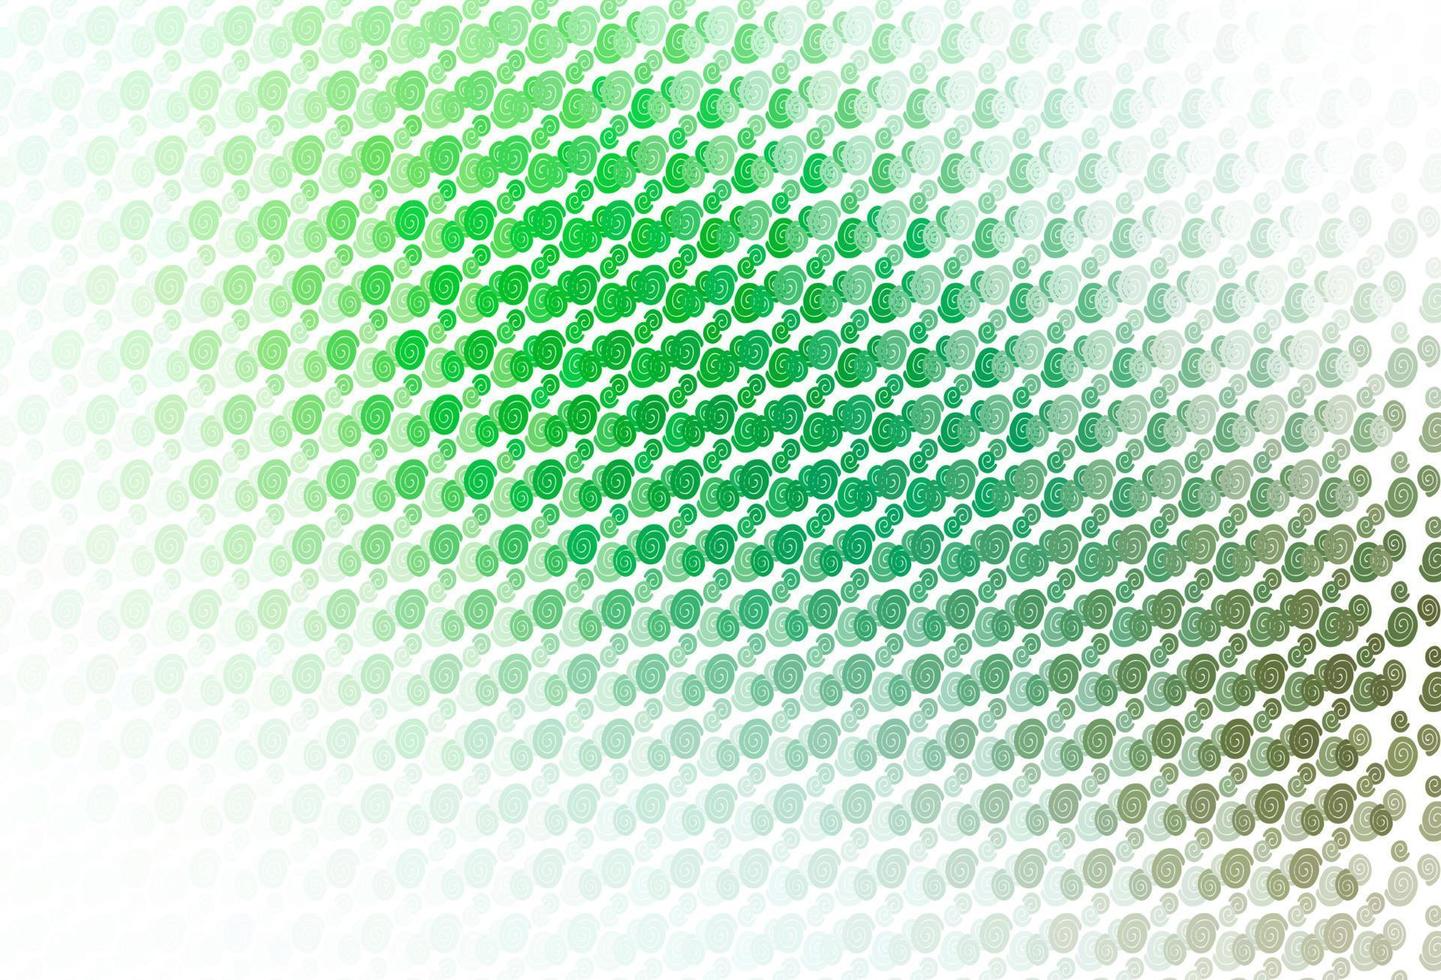 sfondo vettoriale verde chiaro con forme di bolle.